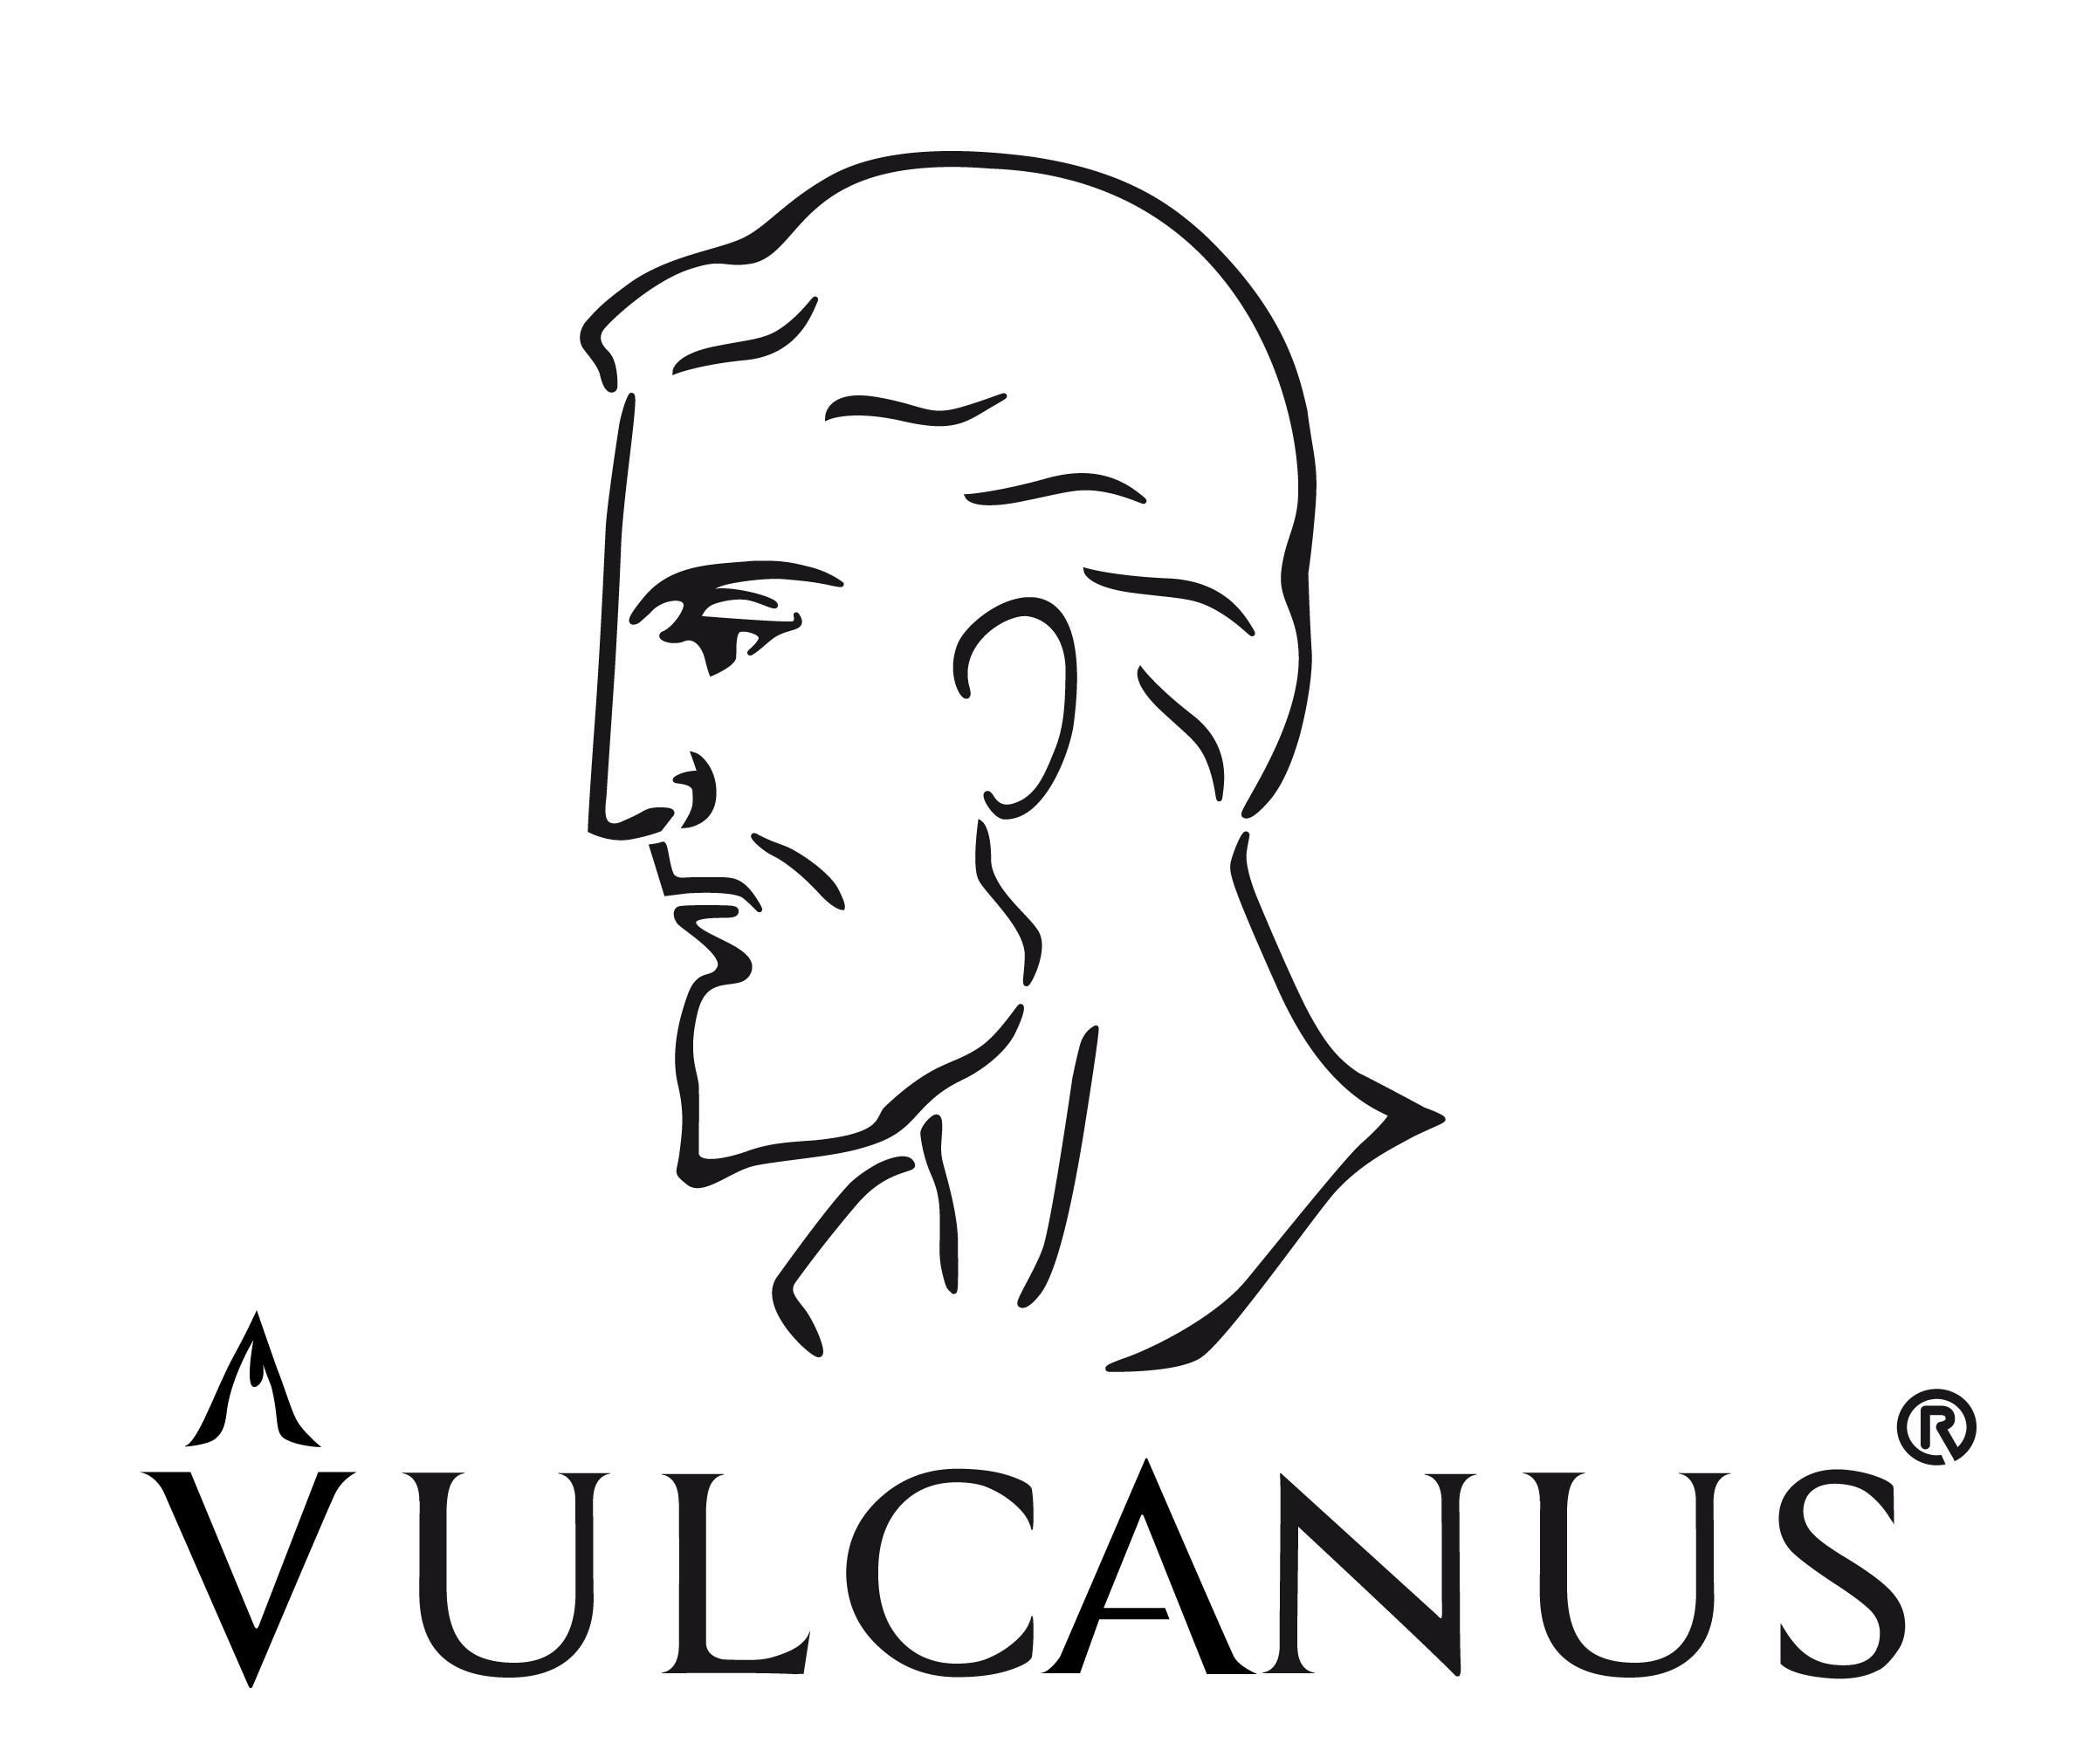 VULCANUS design